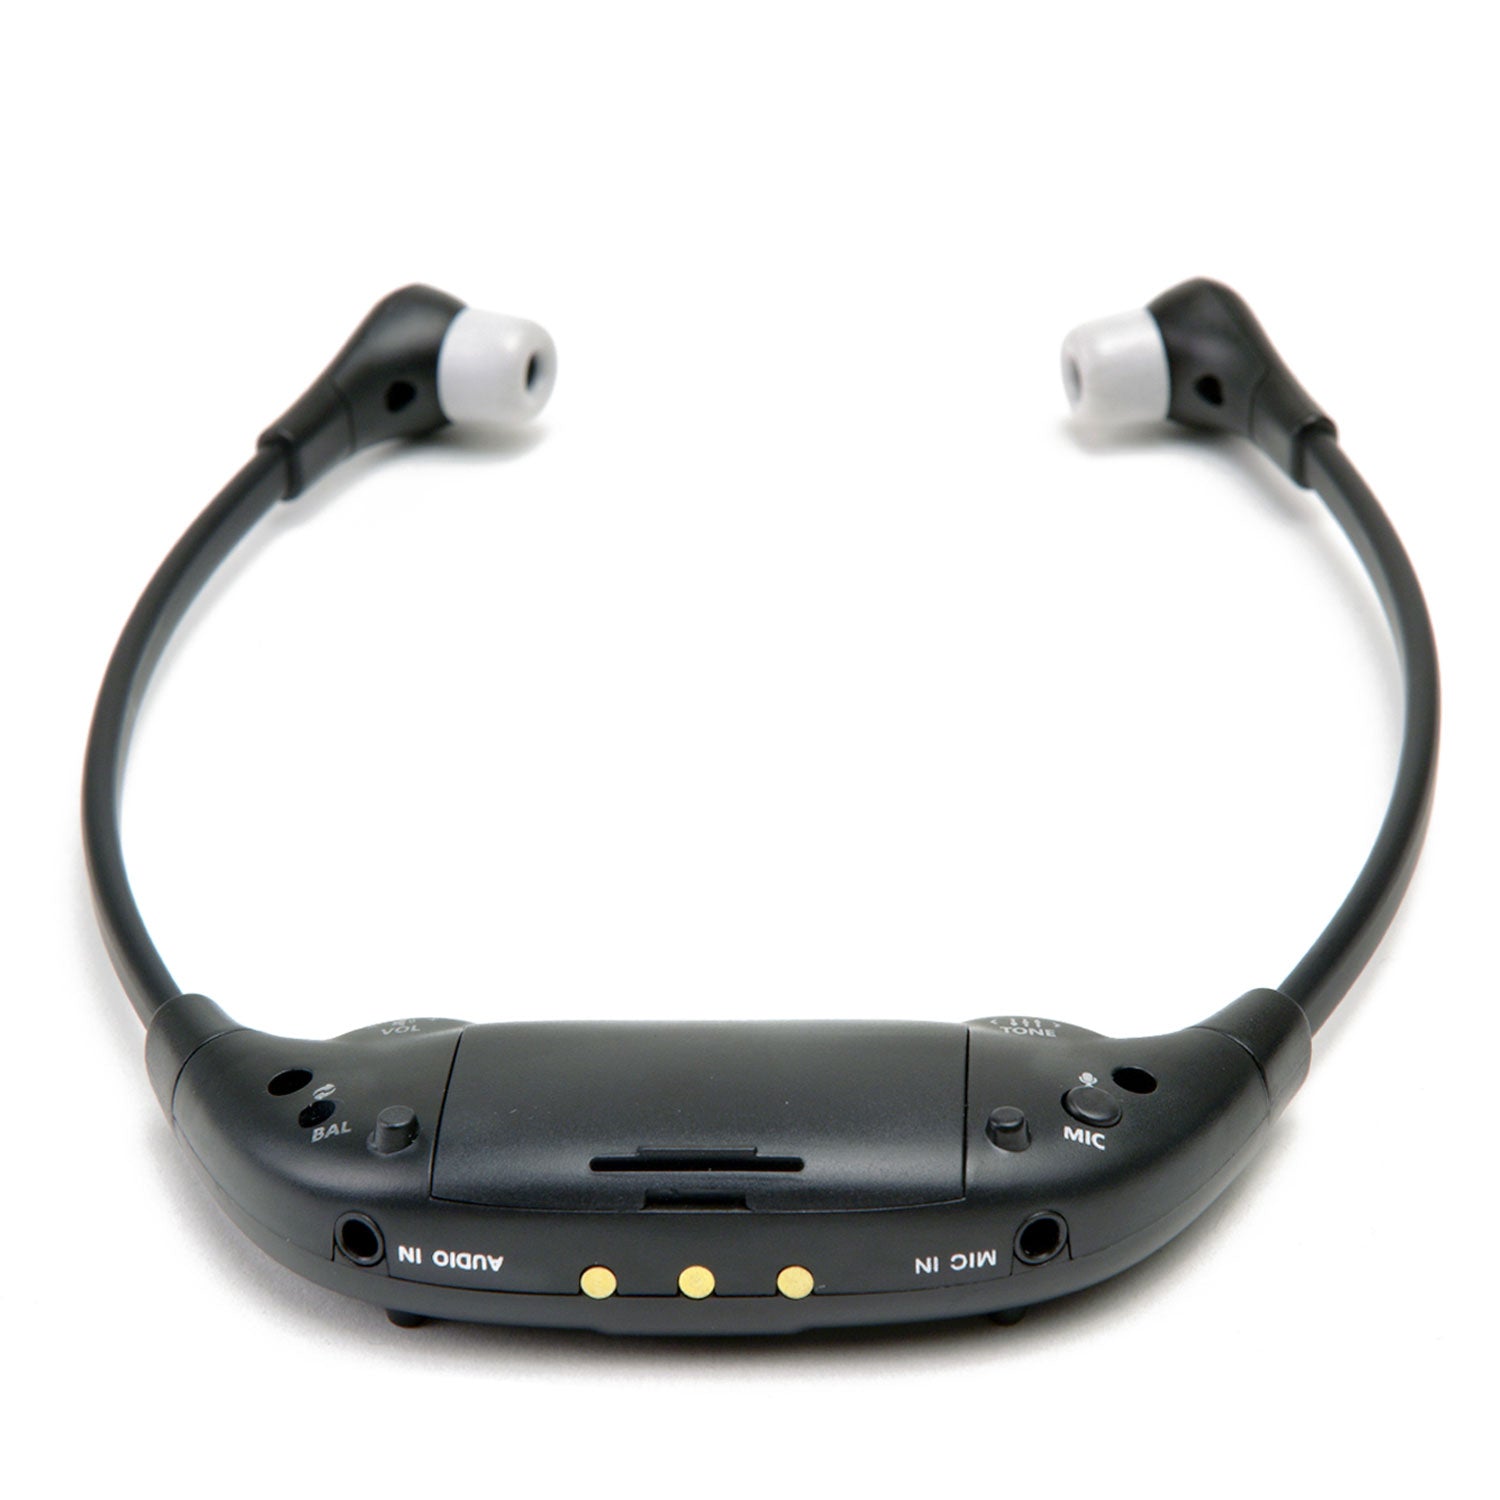 AudioRange ITE-1000 Wireless TV Audio Headset for Hard of Hearing